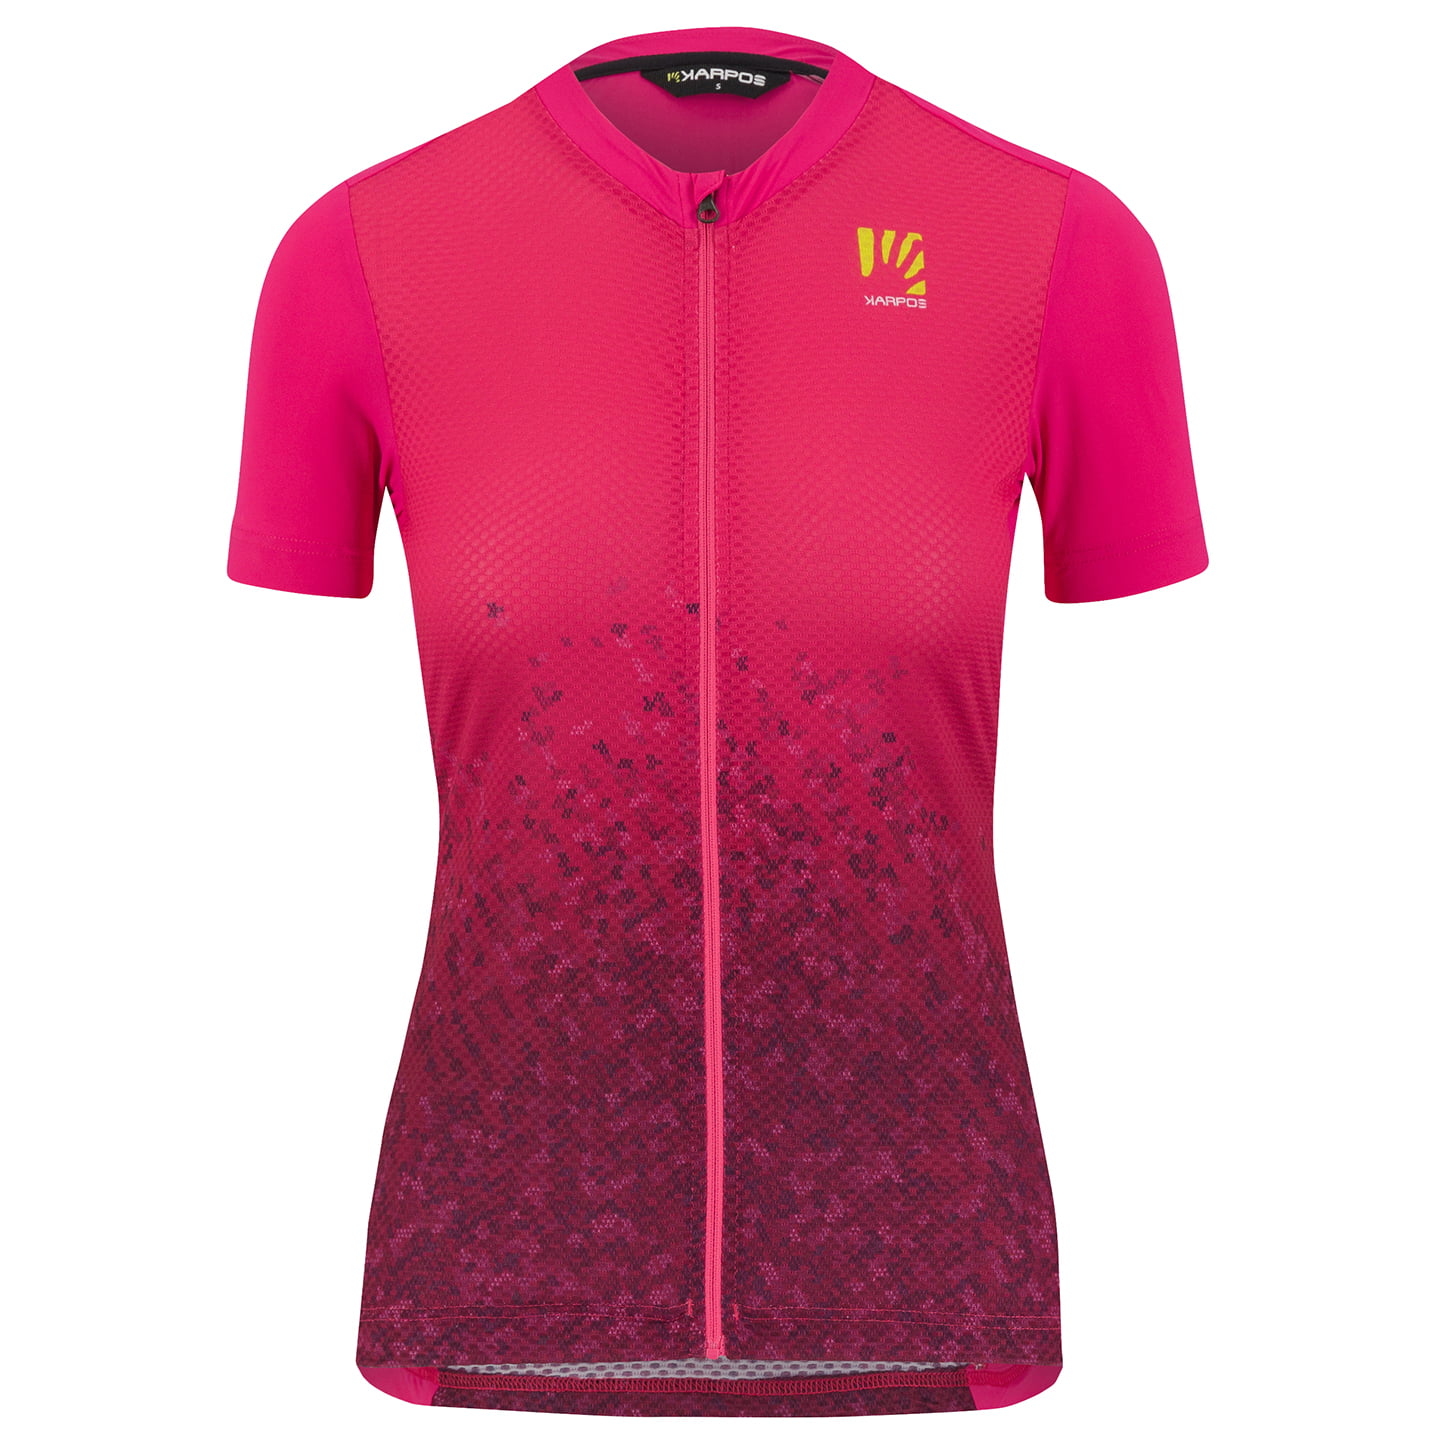 KARPOS Verve Evo Women’s Jersey Women’s Short Sleeve Jersey, size XL, Cycle jersey, Bike gear